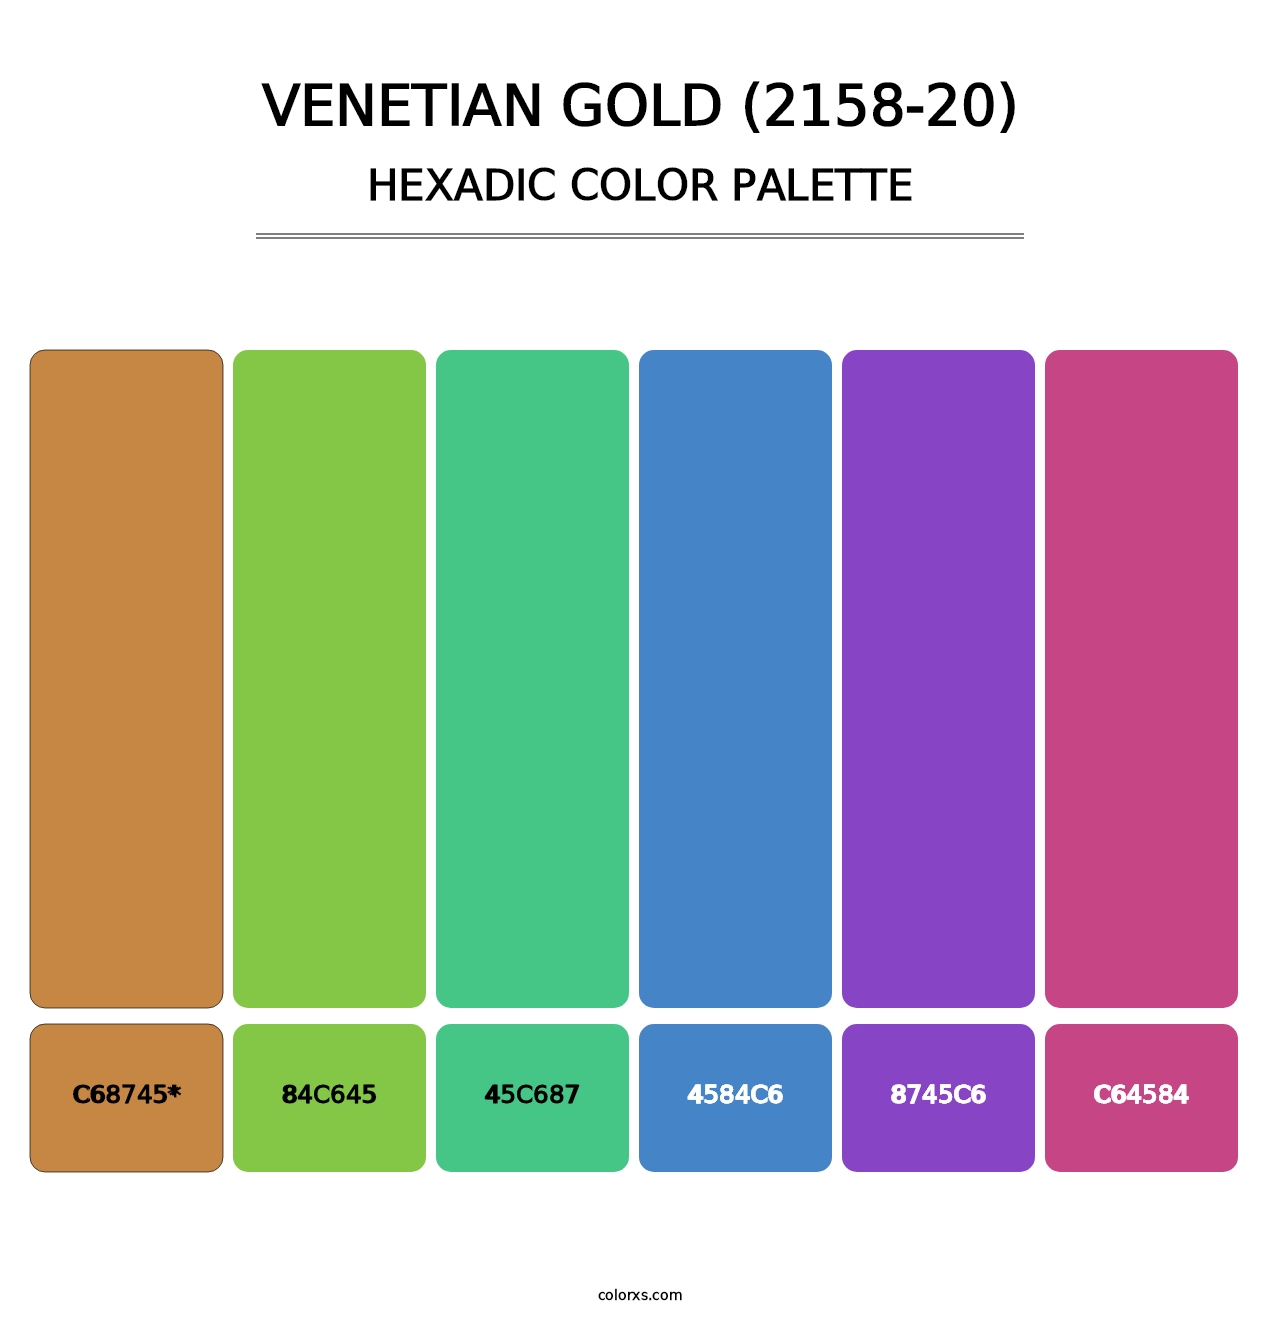 Venetian Gold (2158-20) - Hexadic Color Palette